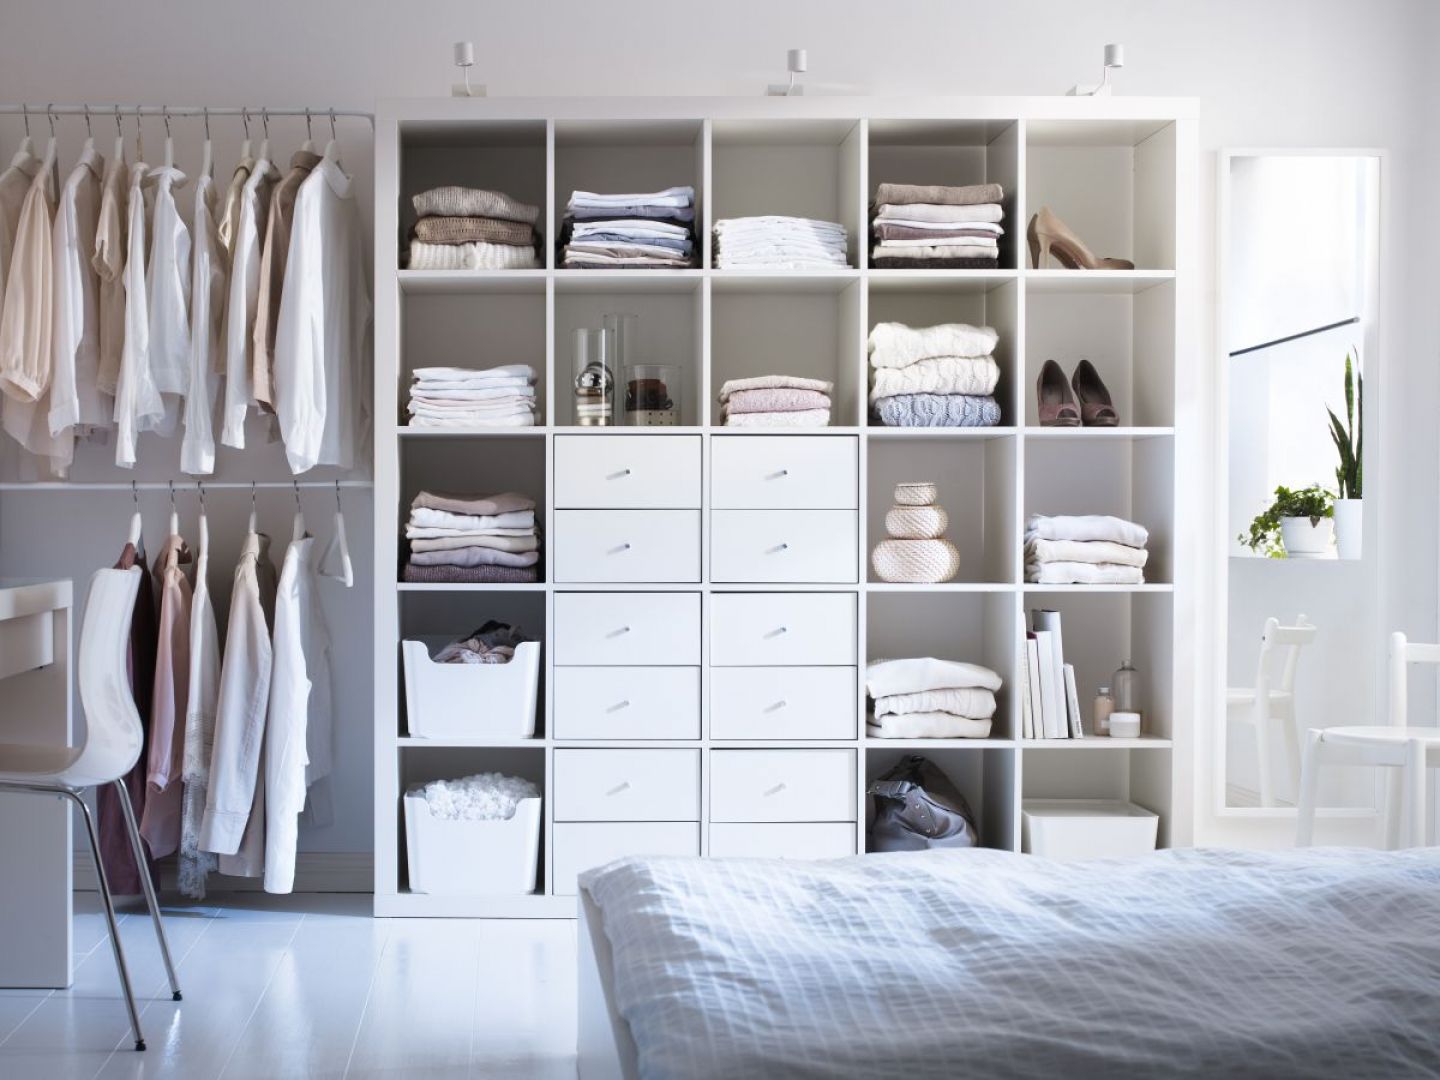 Układając rzeczy w szafie należy pamiętać, że ubrania, po które sięgamy najczęściej powinny być ułożone na półkach znajdujących się w zasięgu naszej ręki. Natomiast rzeczy, które nosimy rzadko układamy na półkach położonych w wyższych partiach szafy. Fot. IKEA